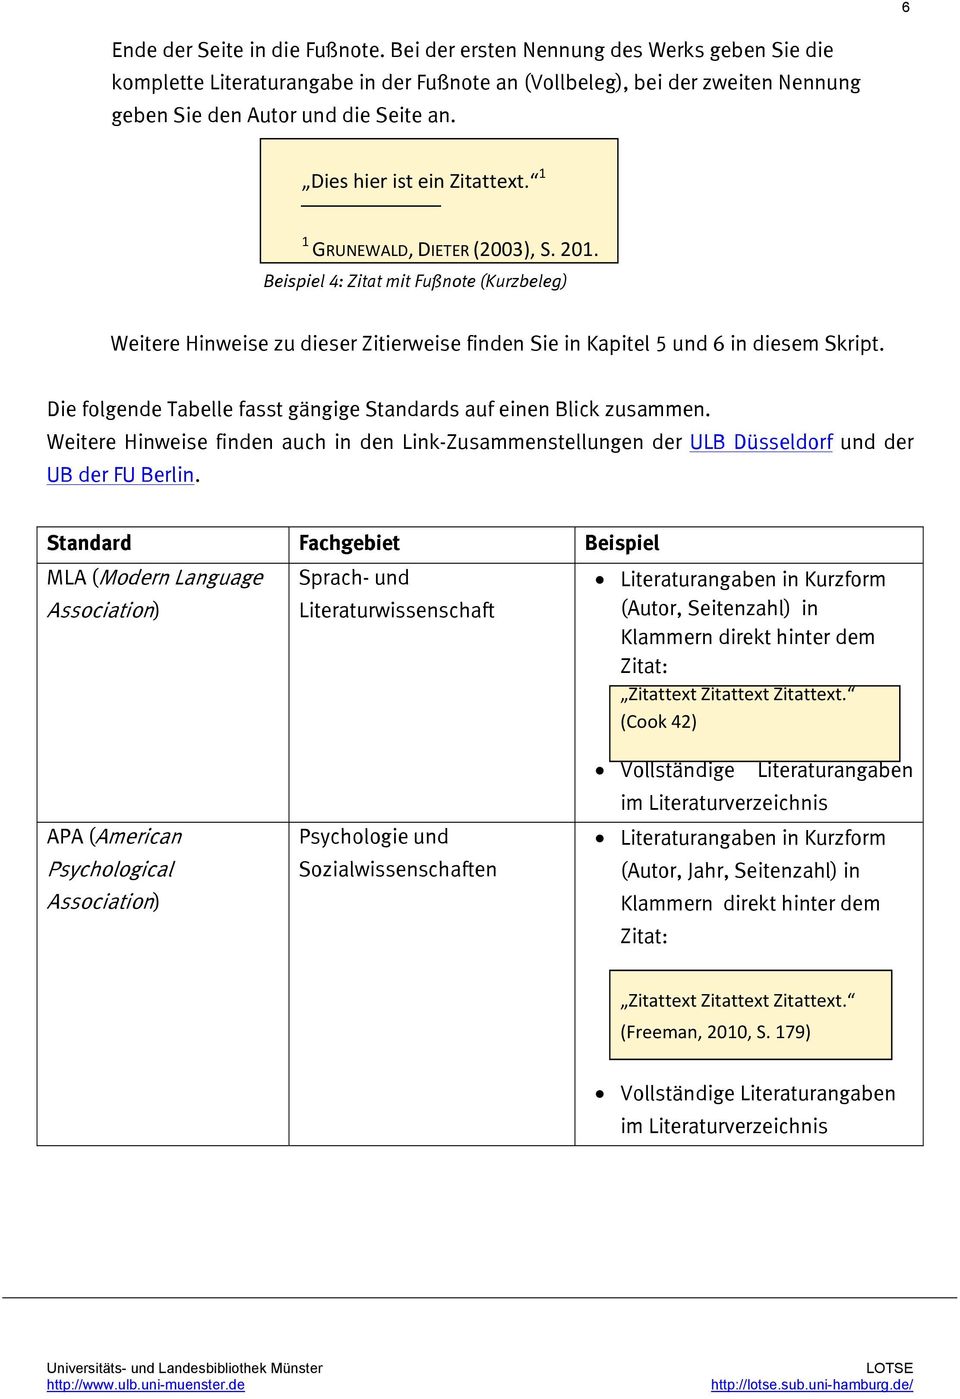 Die folgende Tabelle fasst gängige Standards auf einen Blick zusammen. Weitere Hinweise finden auch in den Link-Zusammenstellungen der ULB Düsseldorf und der UB der FU Berlin.